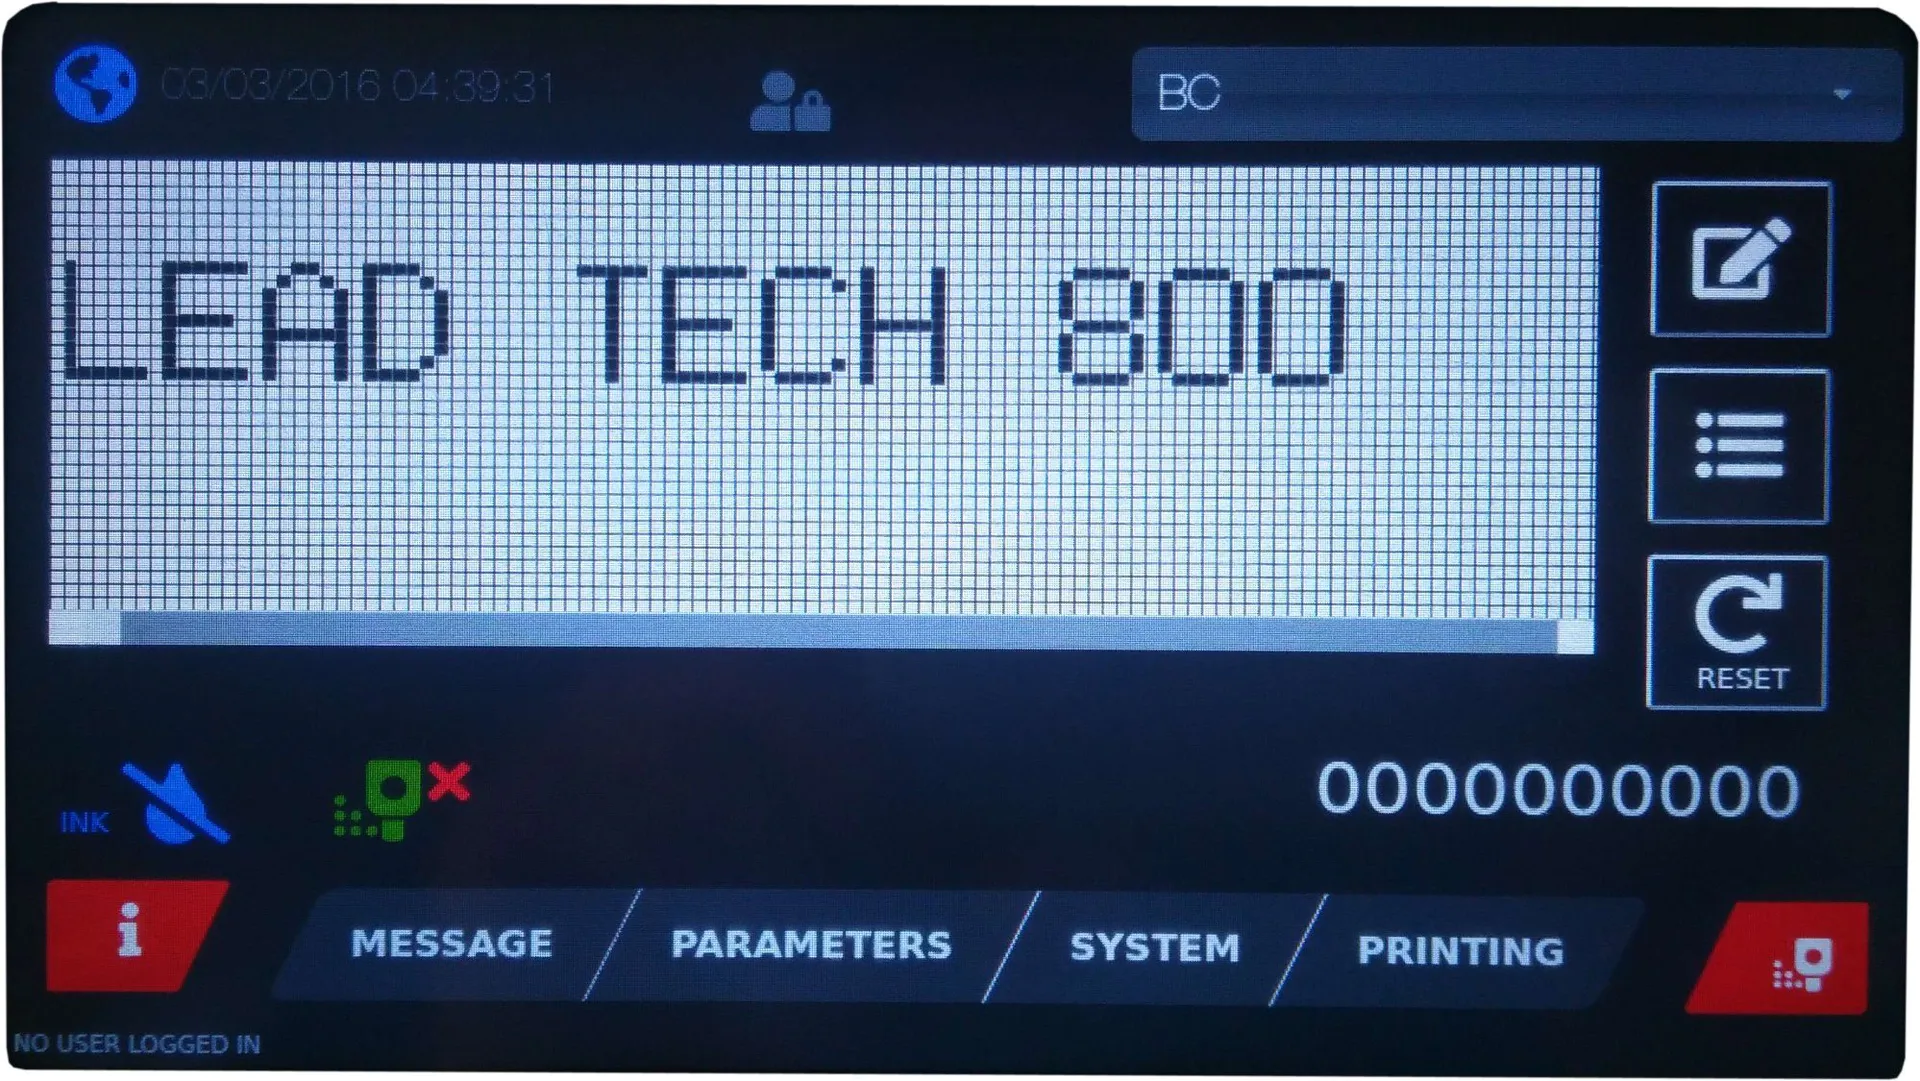 Lead Tech Lt800 Date Bottle Cij Inkjet Printer